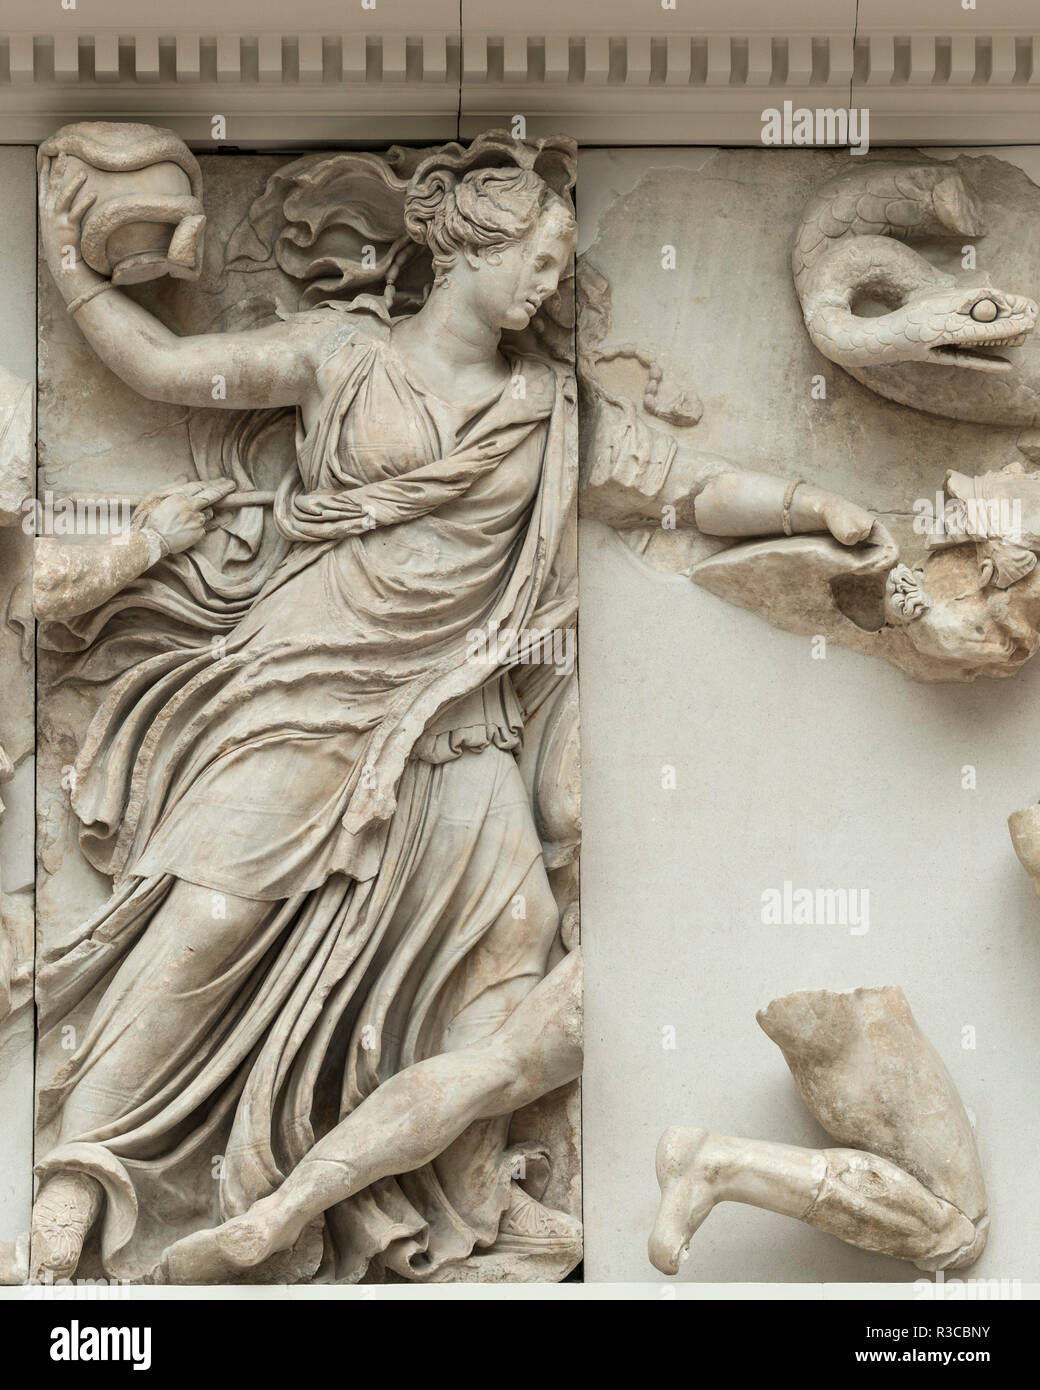 Berlin. Deutschland. Pergamon Museum. Pergamonaltar. Gigantenfries,Panel, eine junge Göttin, möglicherweise Nyx oder Persephone, schleudert eine Vase mit einer s Stockfoto